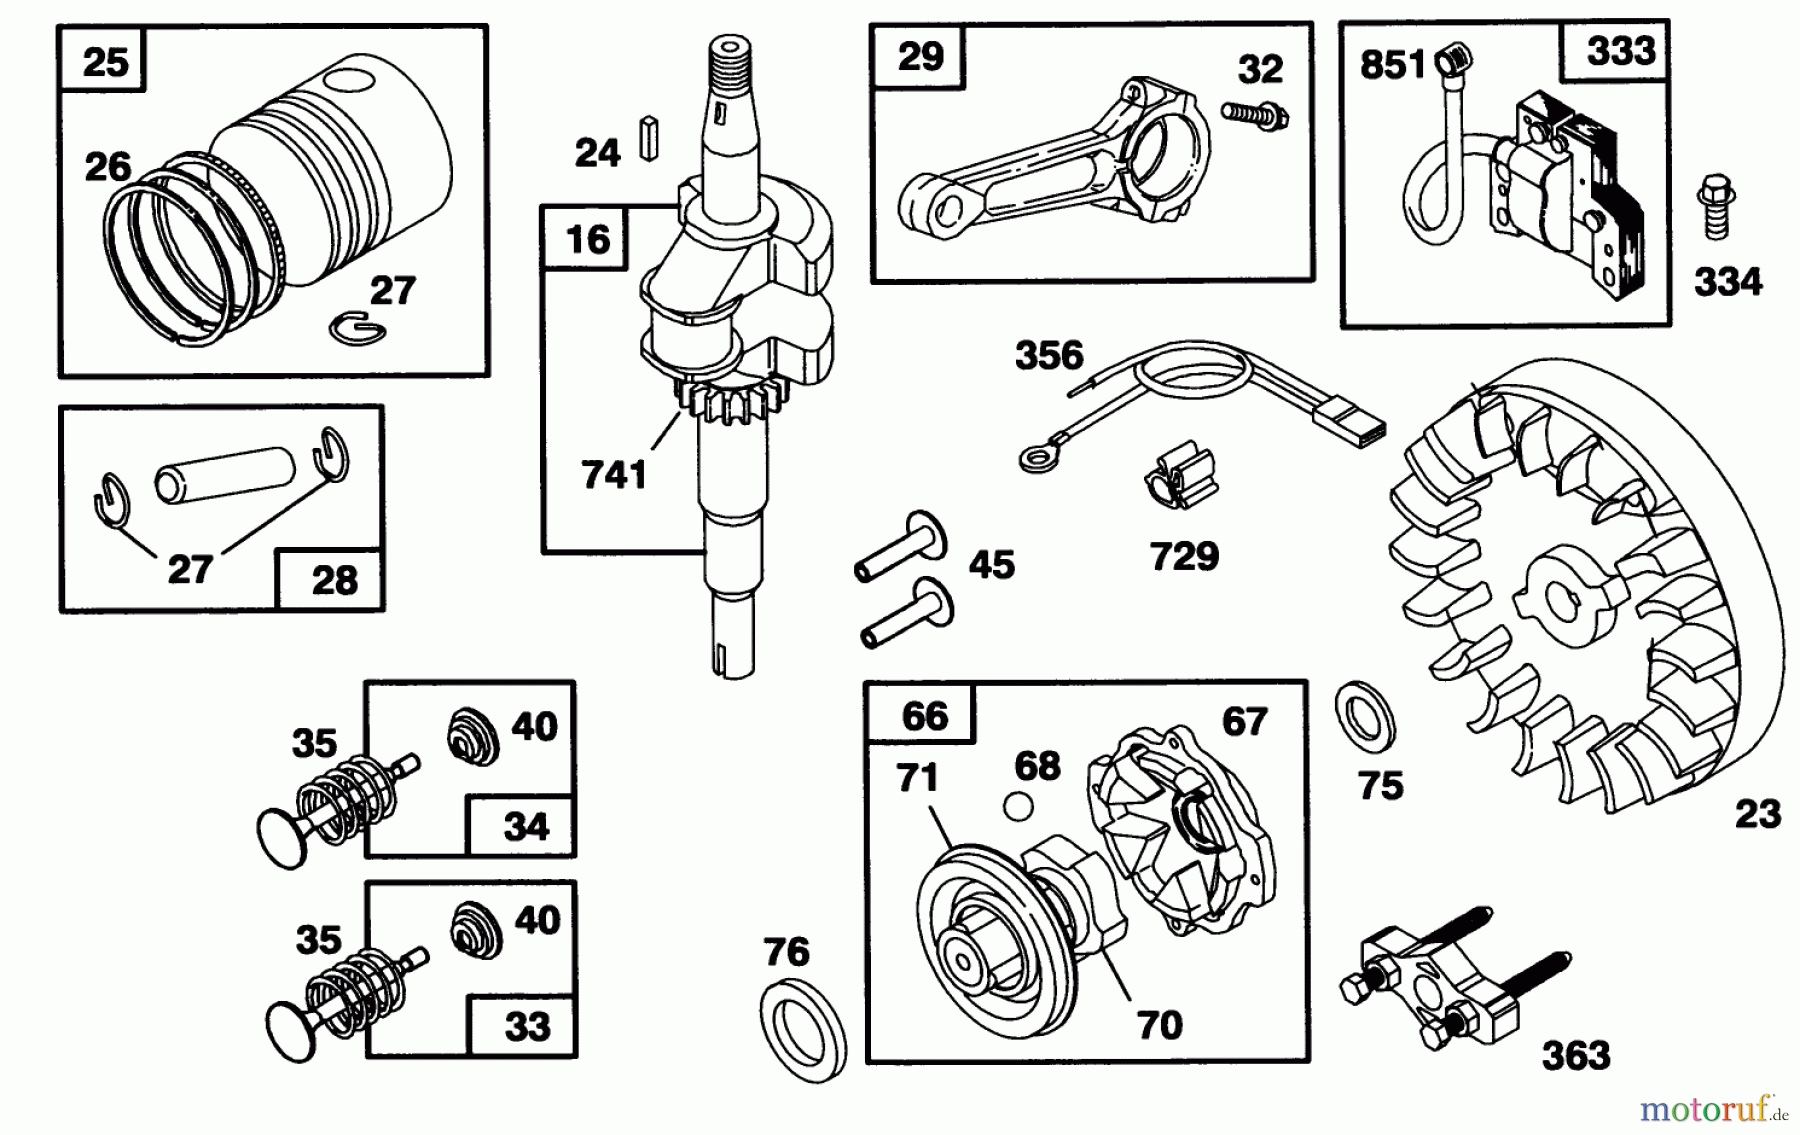  Toro Neu Mowers, Walk-Behind Seite 1 20432 - Toro Lawnmower, 1993 (39000001-39999999) ENGINE BRIGGS & STRATTON MODEL 95902-3154-01 #2